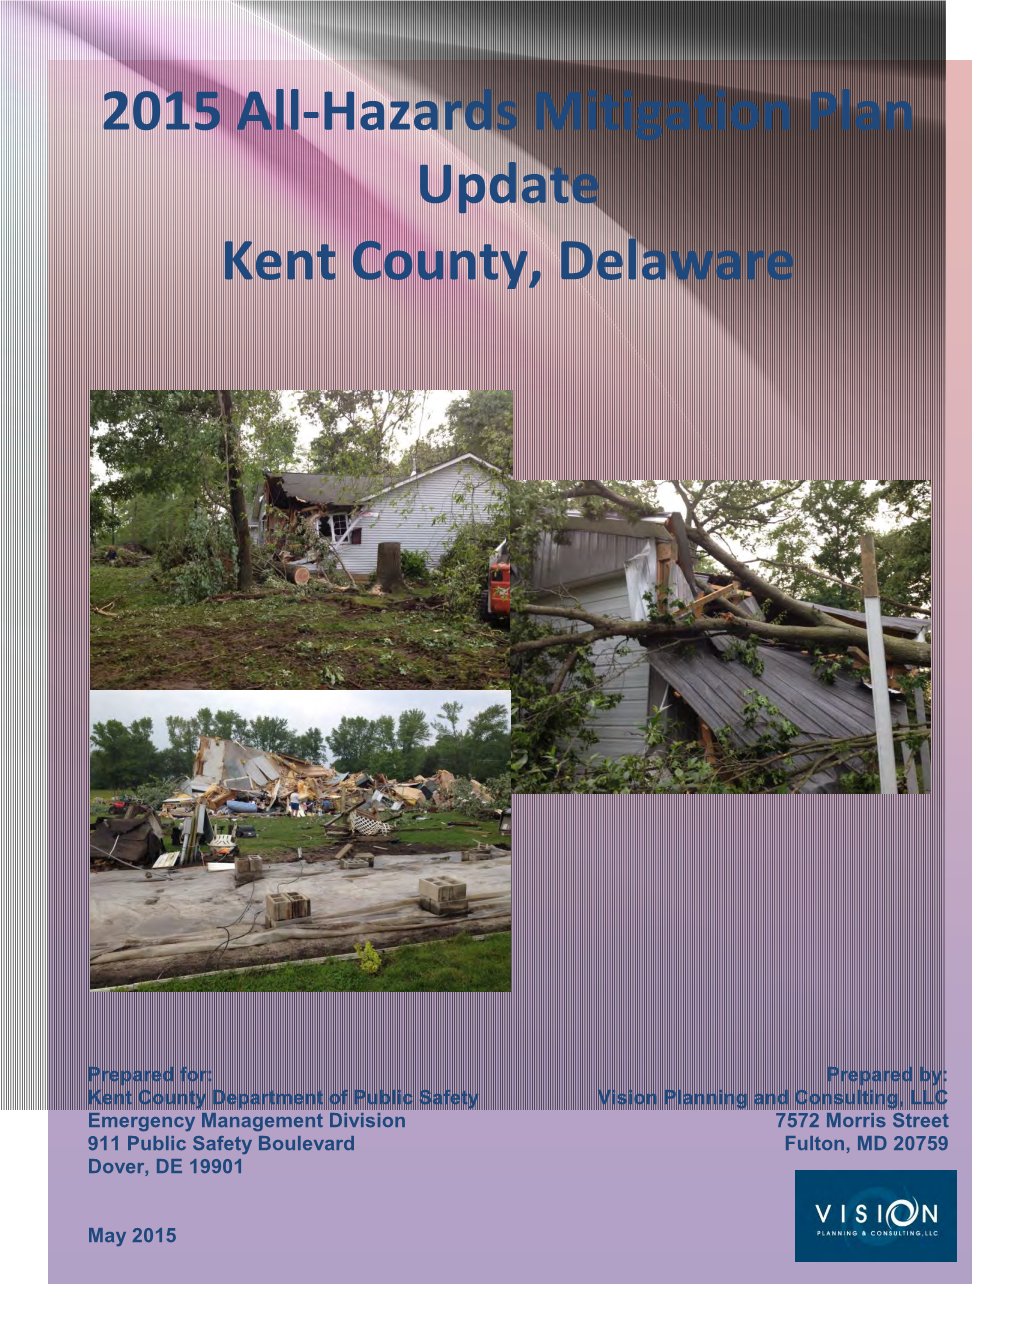 2015 All-Hazards Mitigation Plan Update Kent County, Delaware